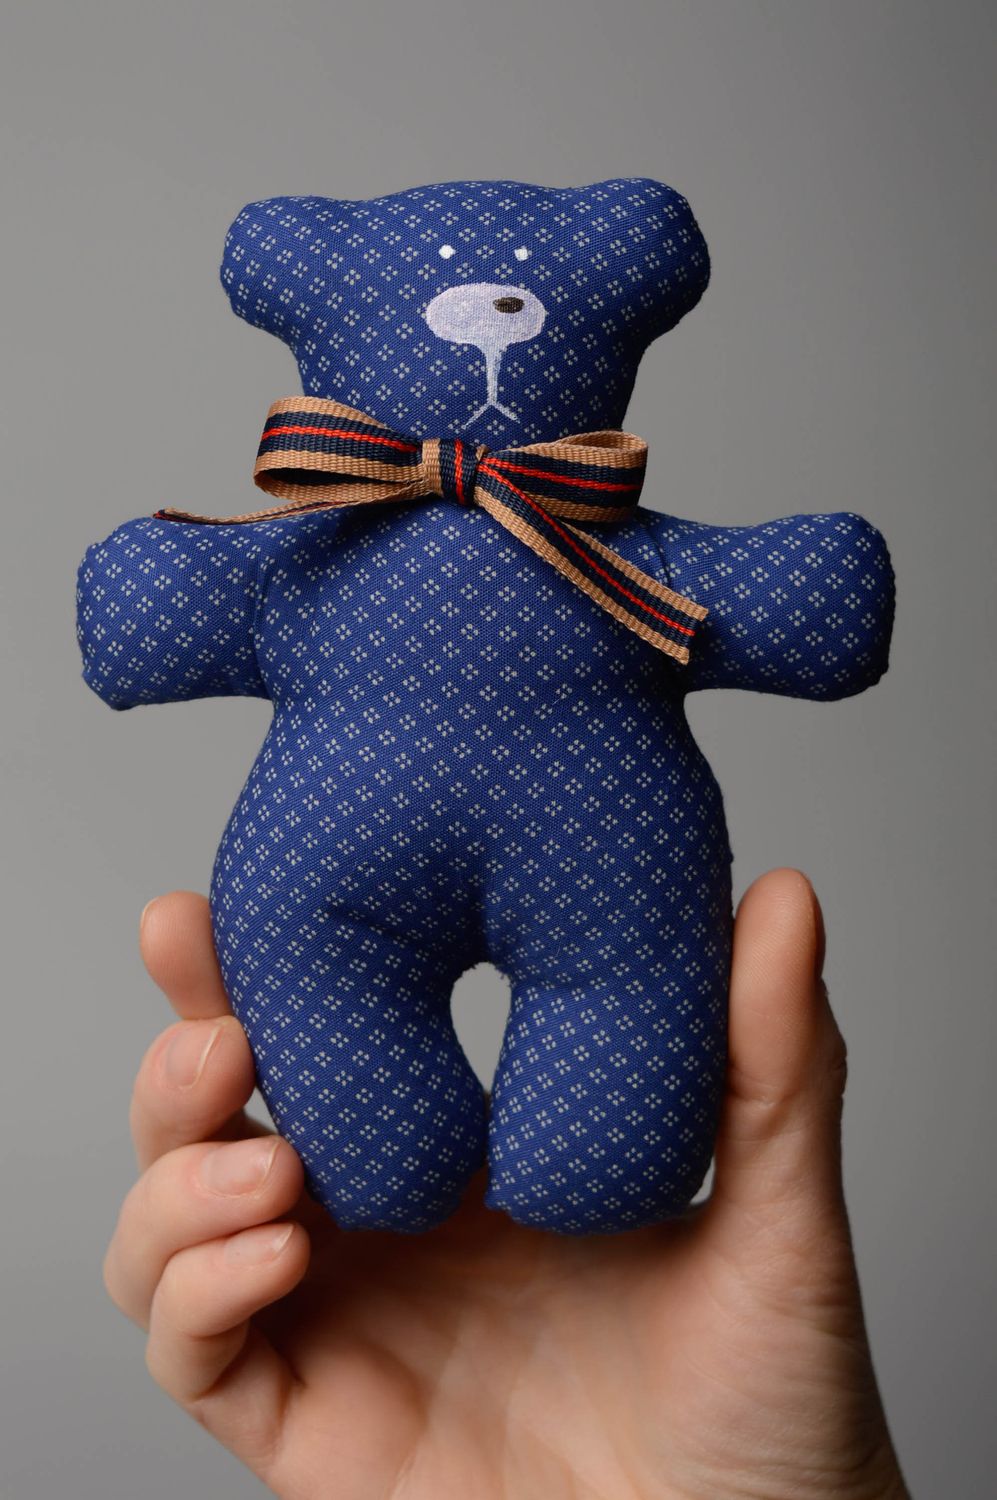 Мягкая игрушка из ткани пошитая вручную Мягкий синий мишка фото 4